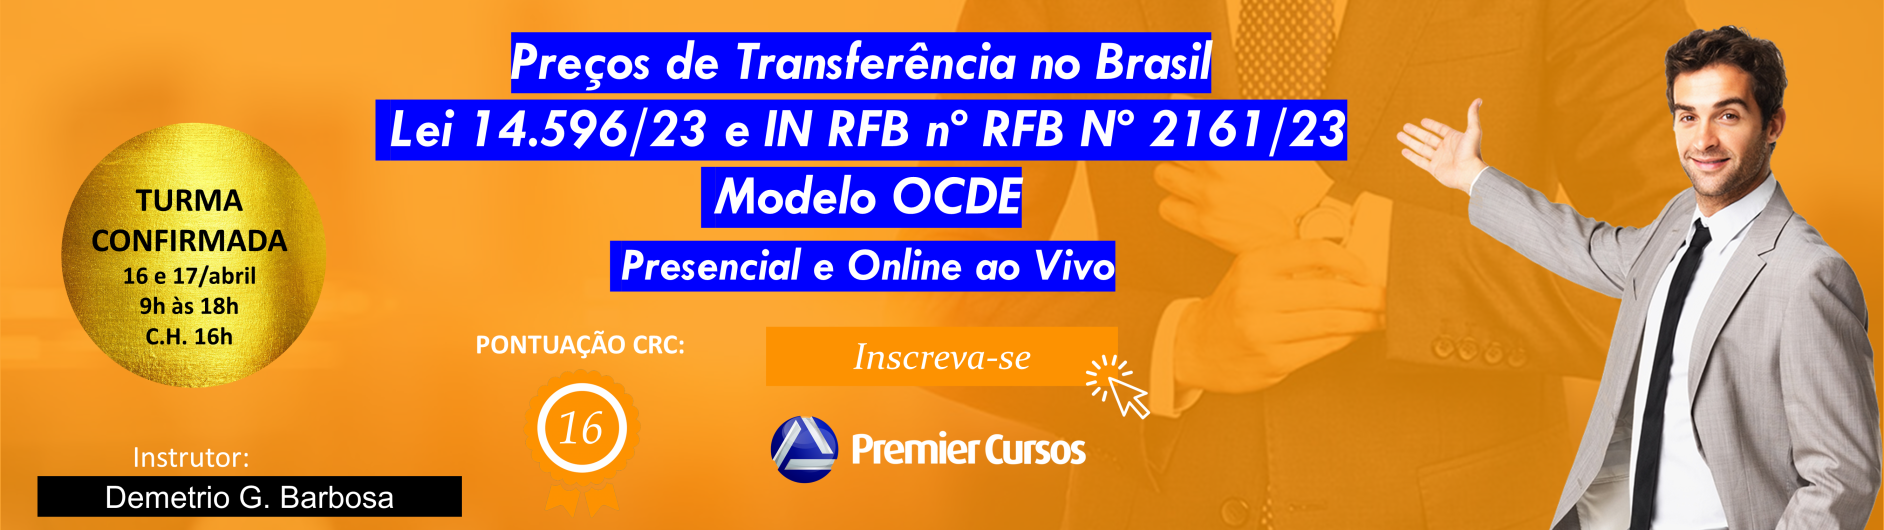 Preços de Transferência no Brasil